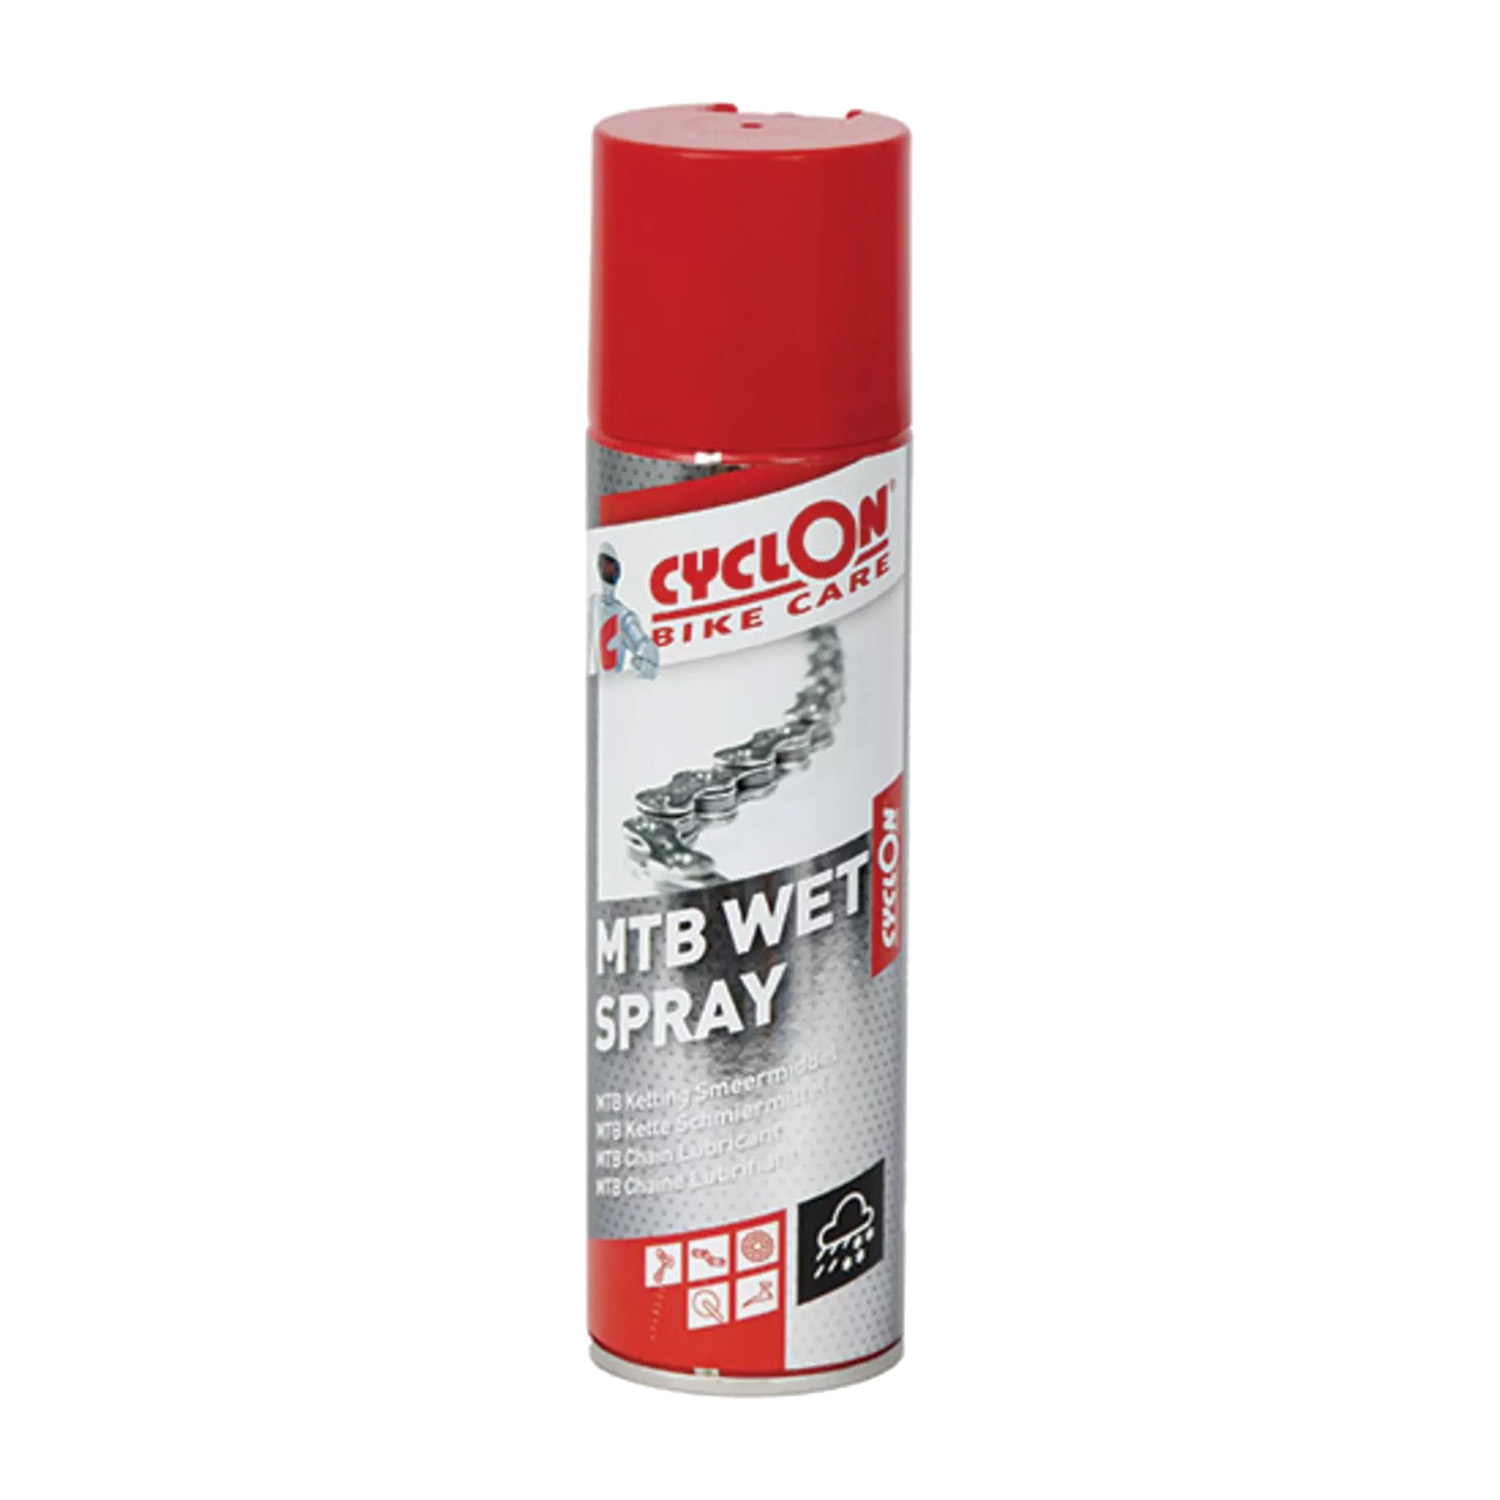 Cyclon MTB wet spray